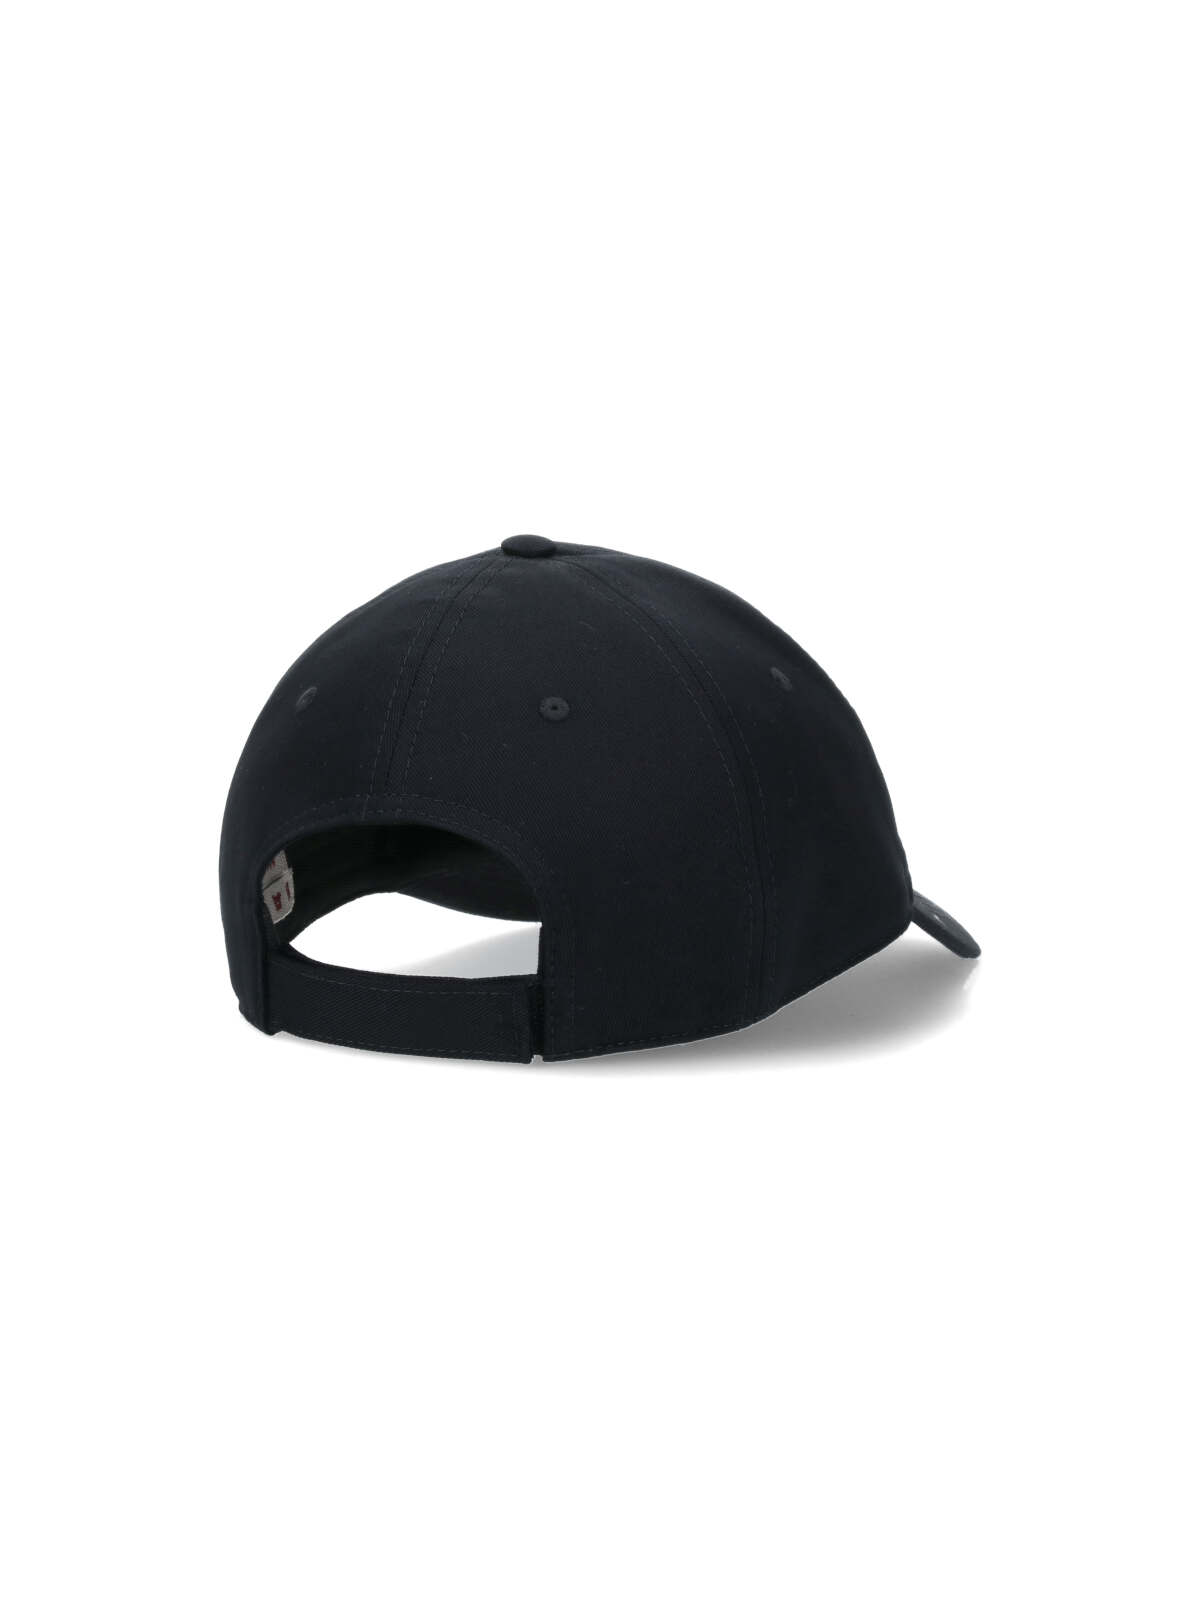 Shop Marni Logo Baseball Cap In Black